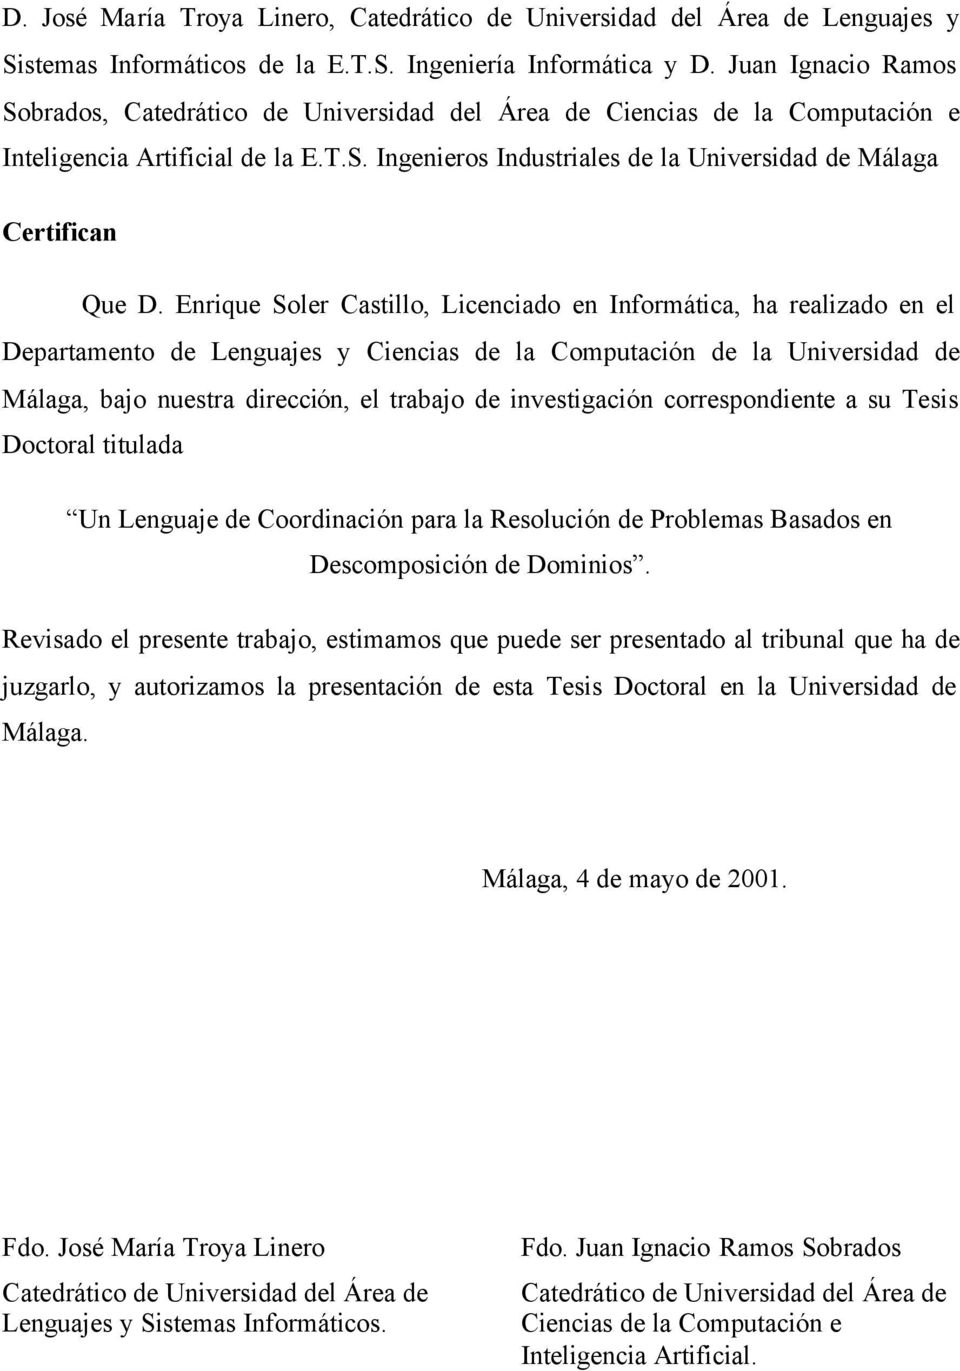 Enrique Soler Castillo, Licenciado en Informática, ha realizado en el Departamento de Lenguajes y Ciencias de la Computación de la Universidad de Málaga, bajo nuestra dirección, el trabajo de